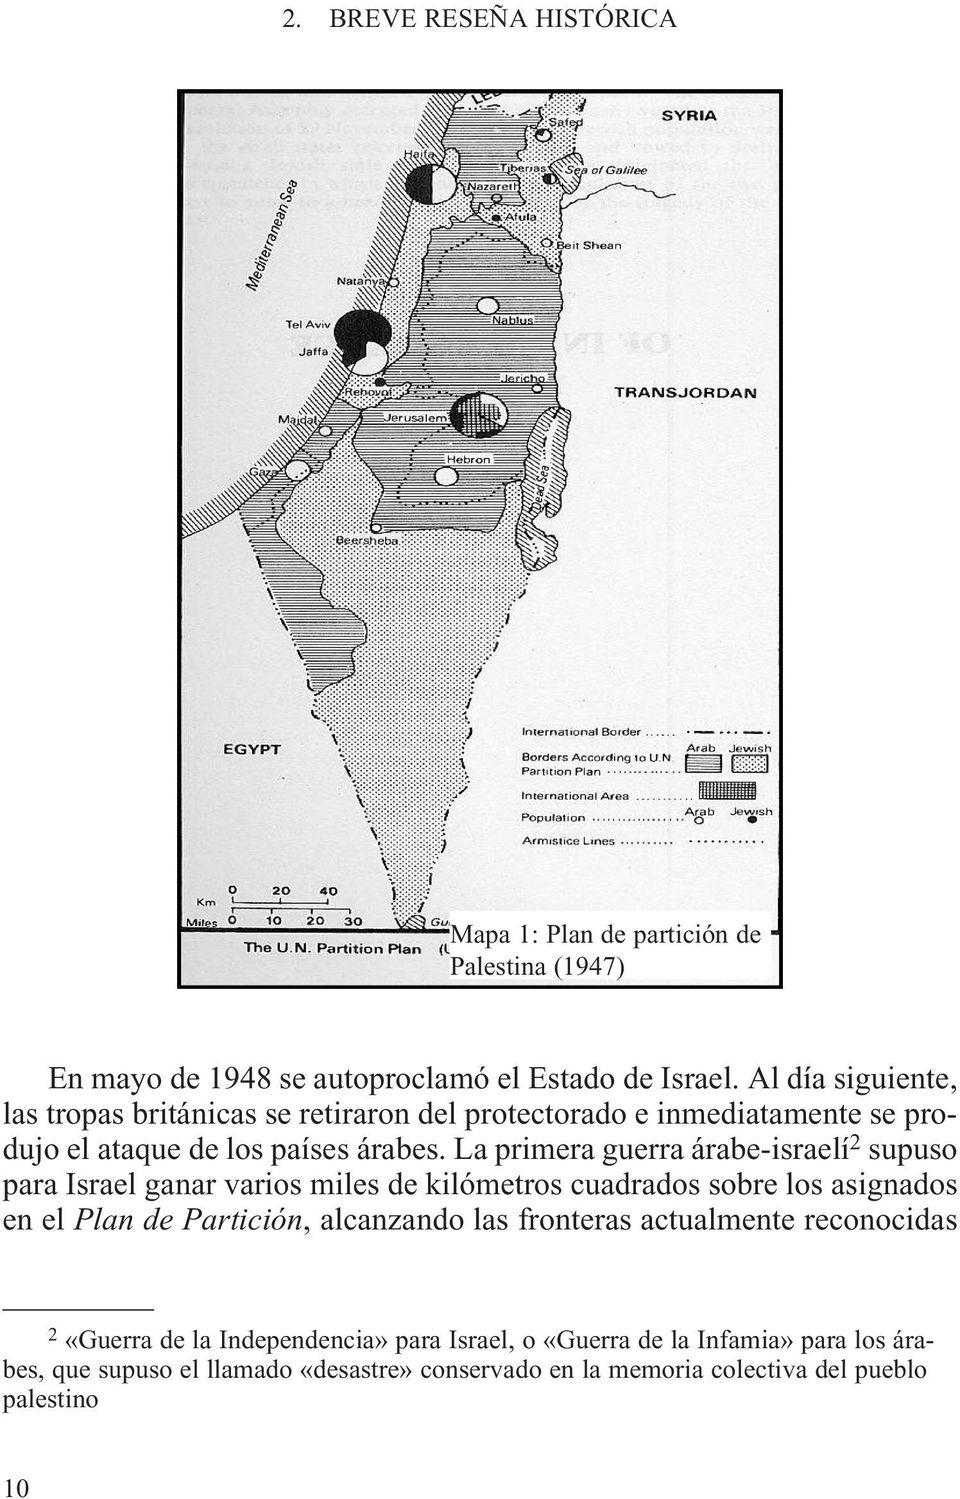 La primera guerra árabe-israelí 2 supuso para Israel ganar varios miles de kilómetros cuadrados sobre los asignados en el Plan de Partición,